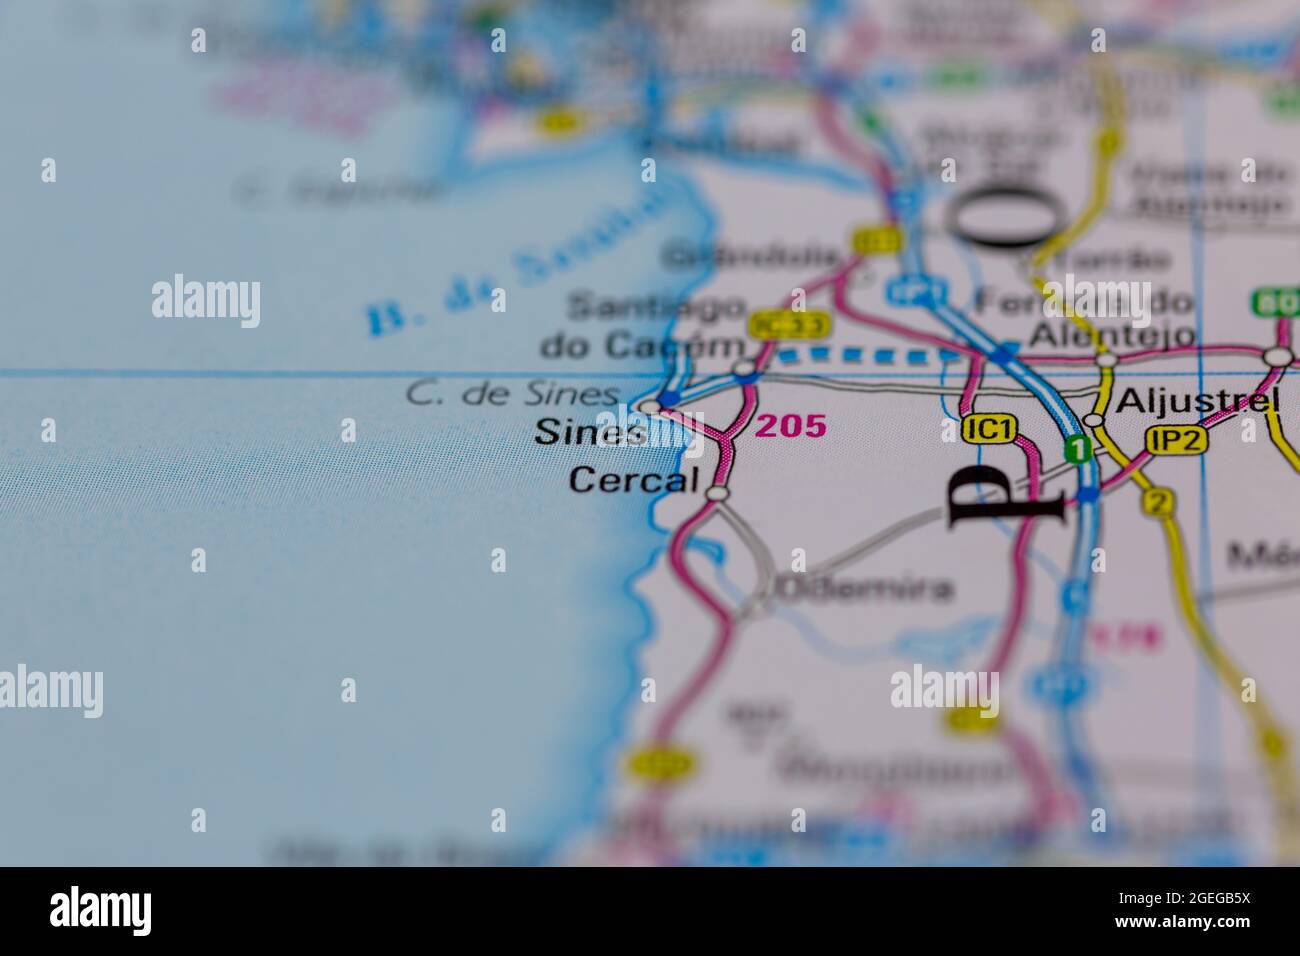 Sines Portugal wird auf einer Straßenkarte oder Geografie-Karte angezeigt Stockfoto